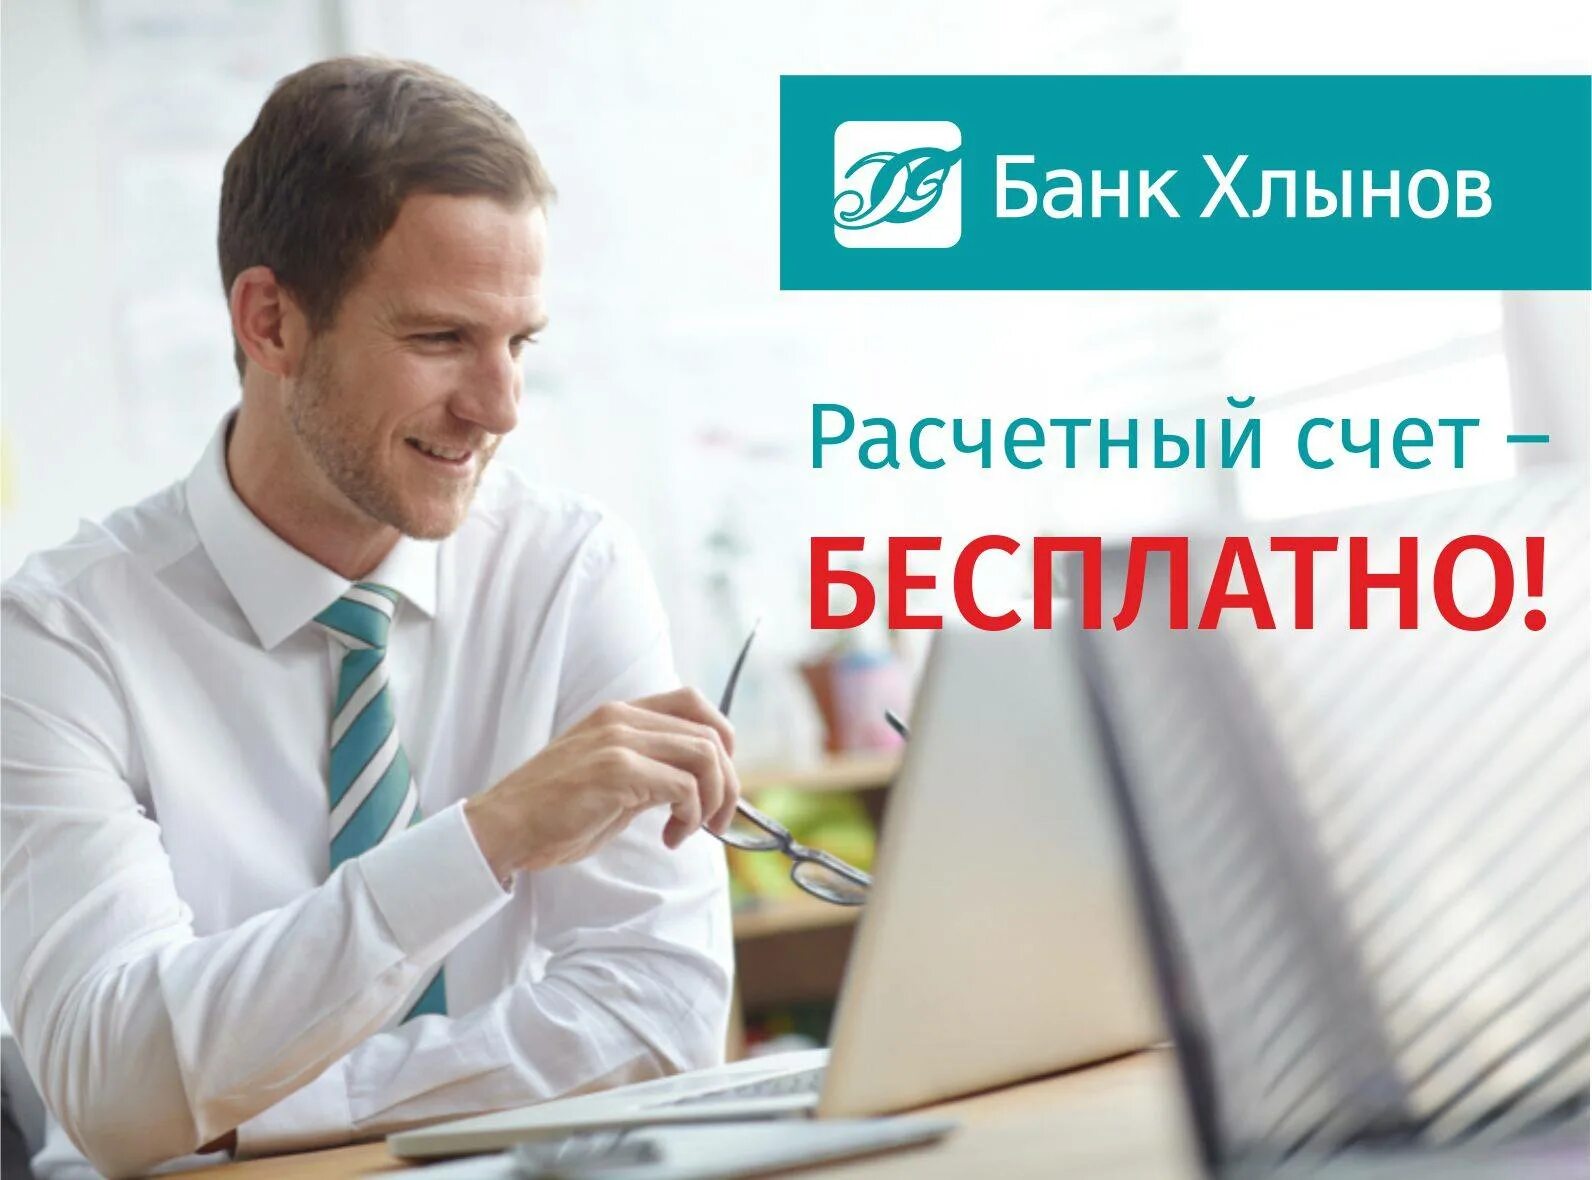 Банк Хлынов. Логотип банка Хлынов. Банк Хлынов офисы. Банк Хлынов офис на Урицкого.